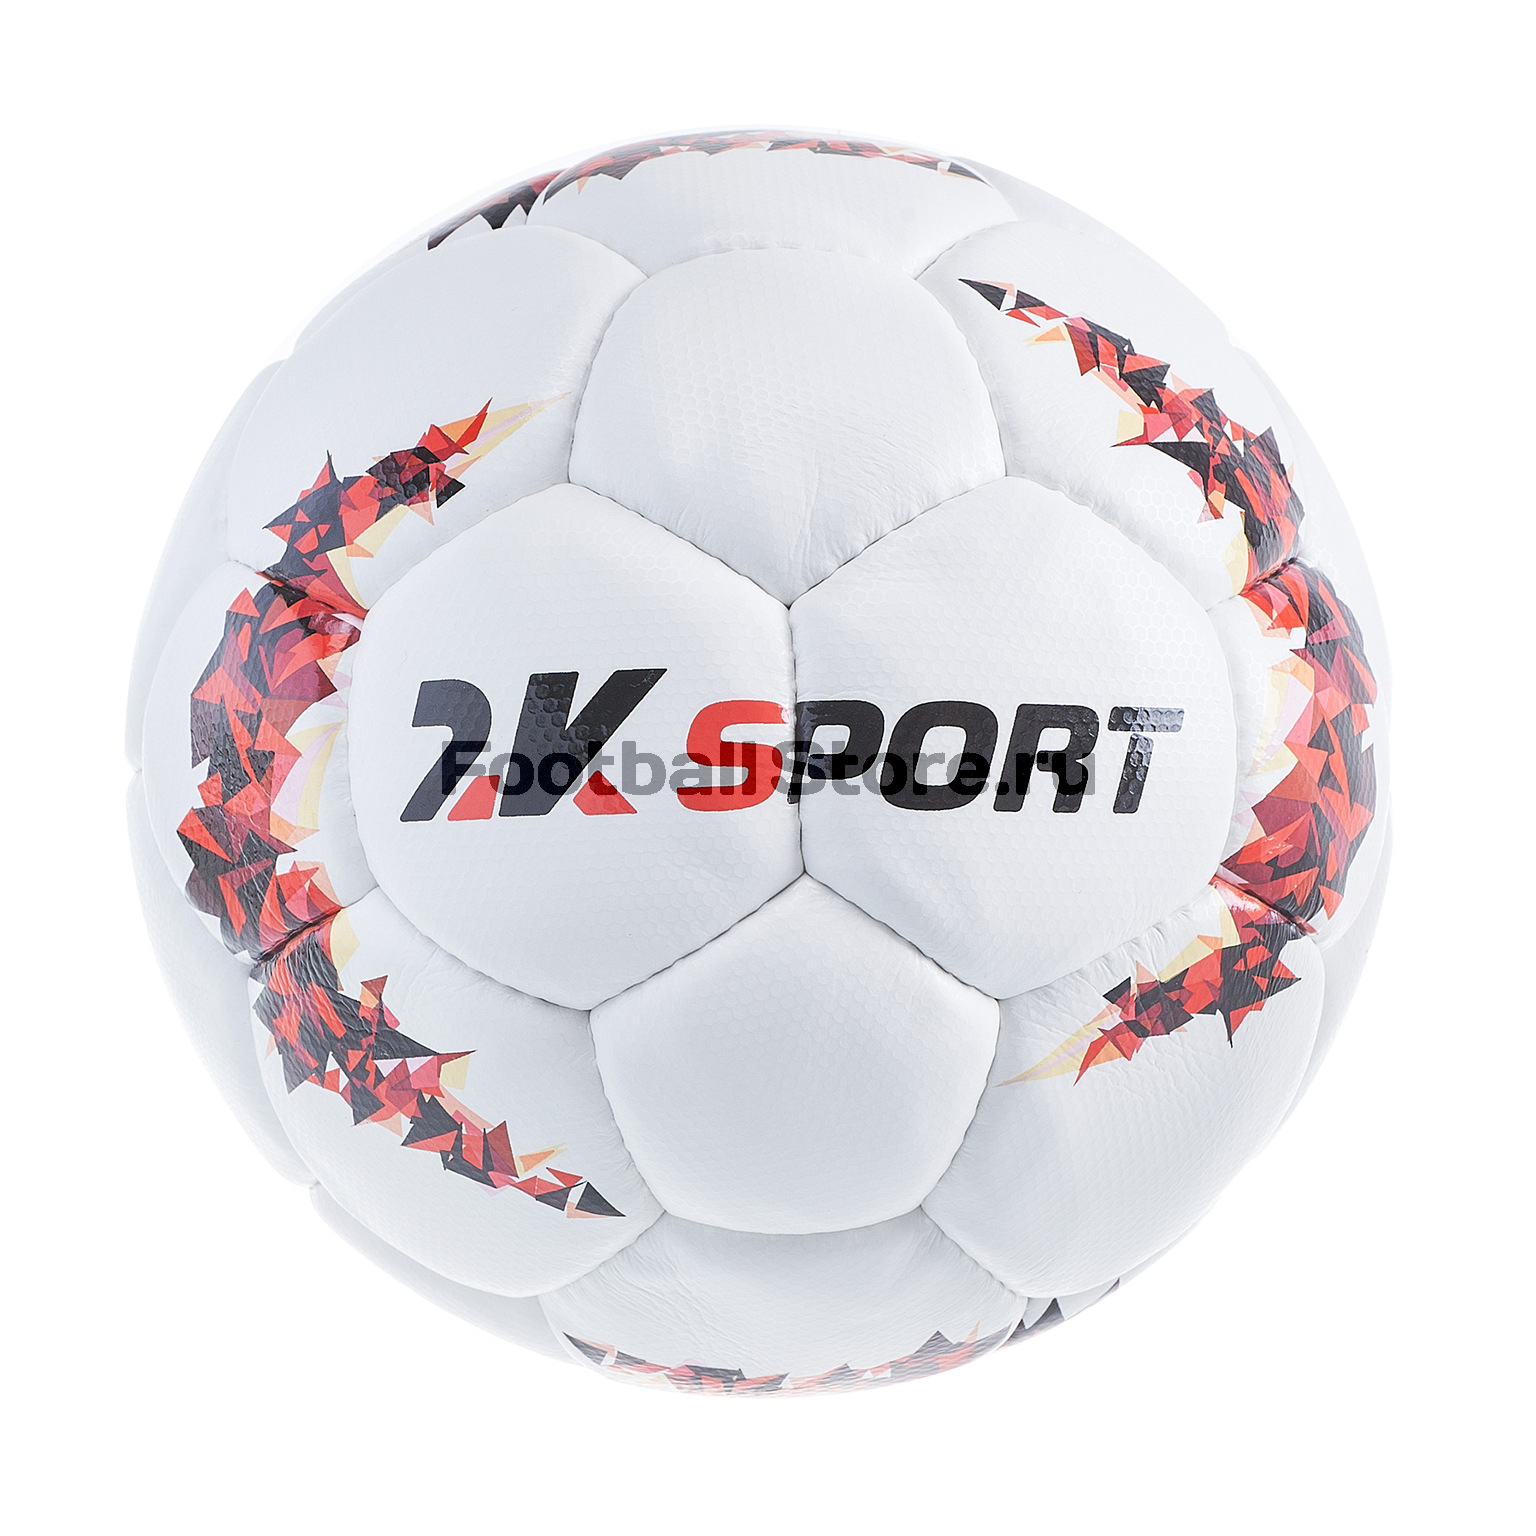 Футбольный мяч 2К Sport Crystal Elite Microfiber 127089